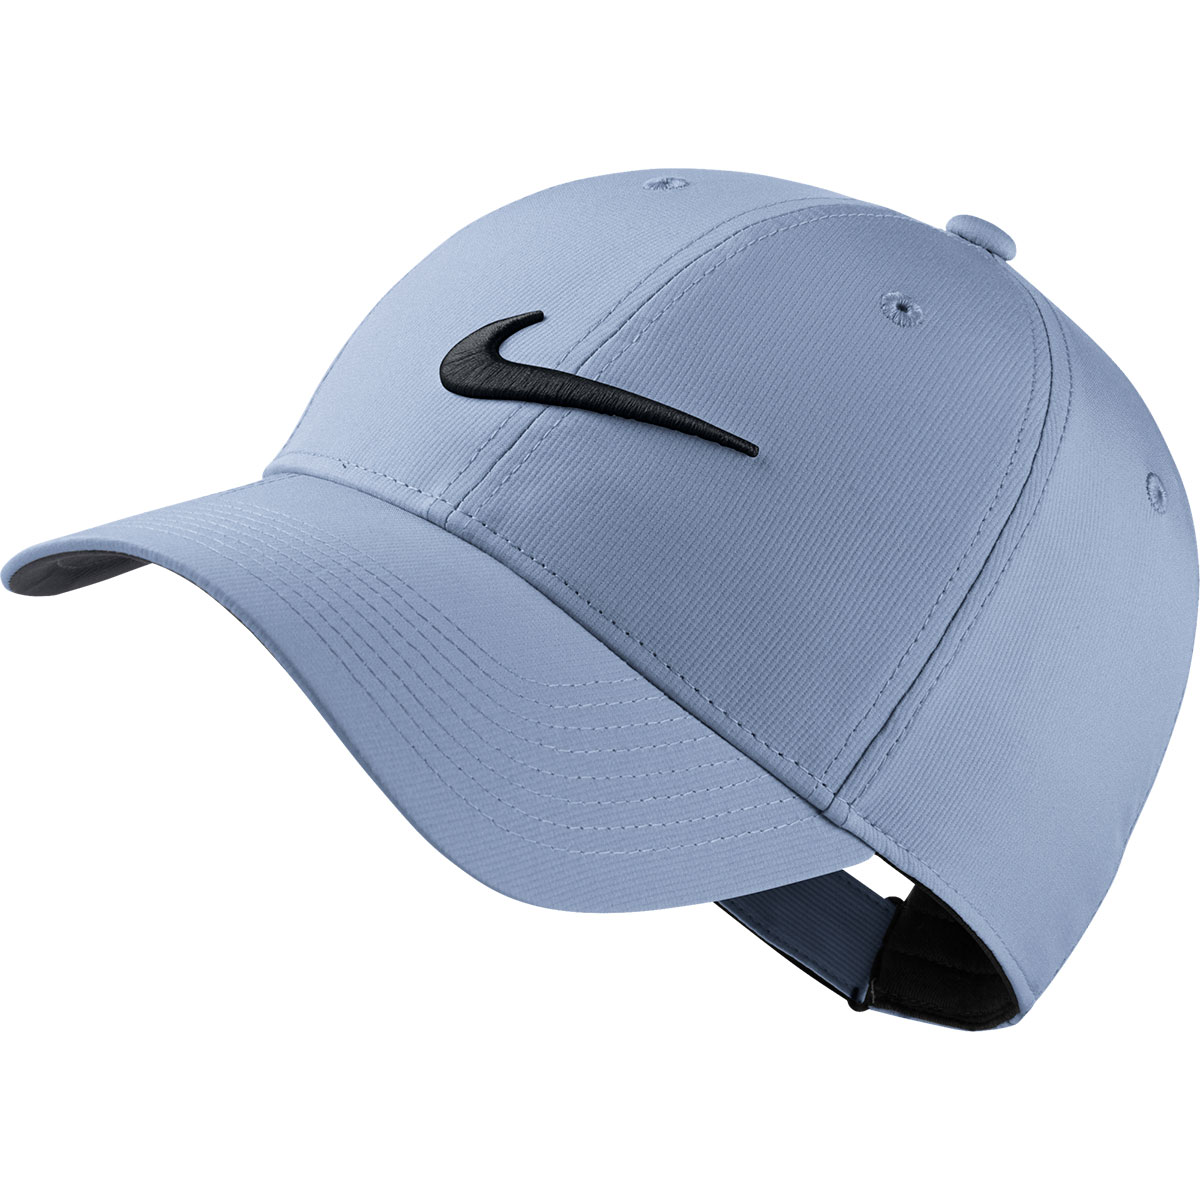 legacy91 golf hat